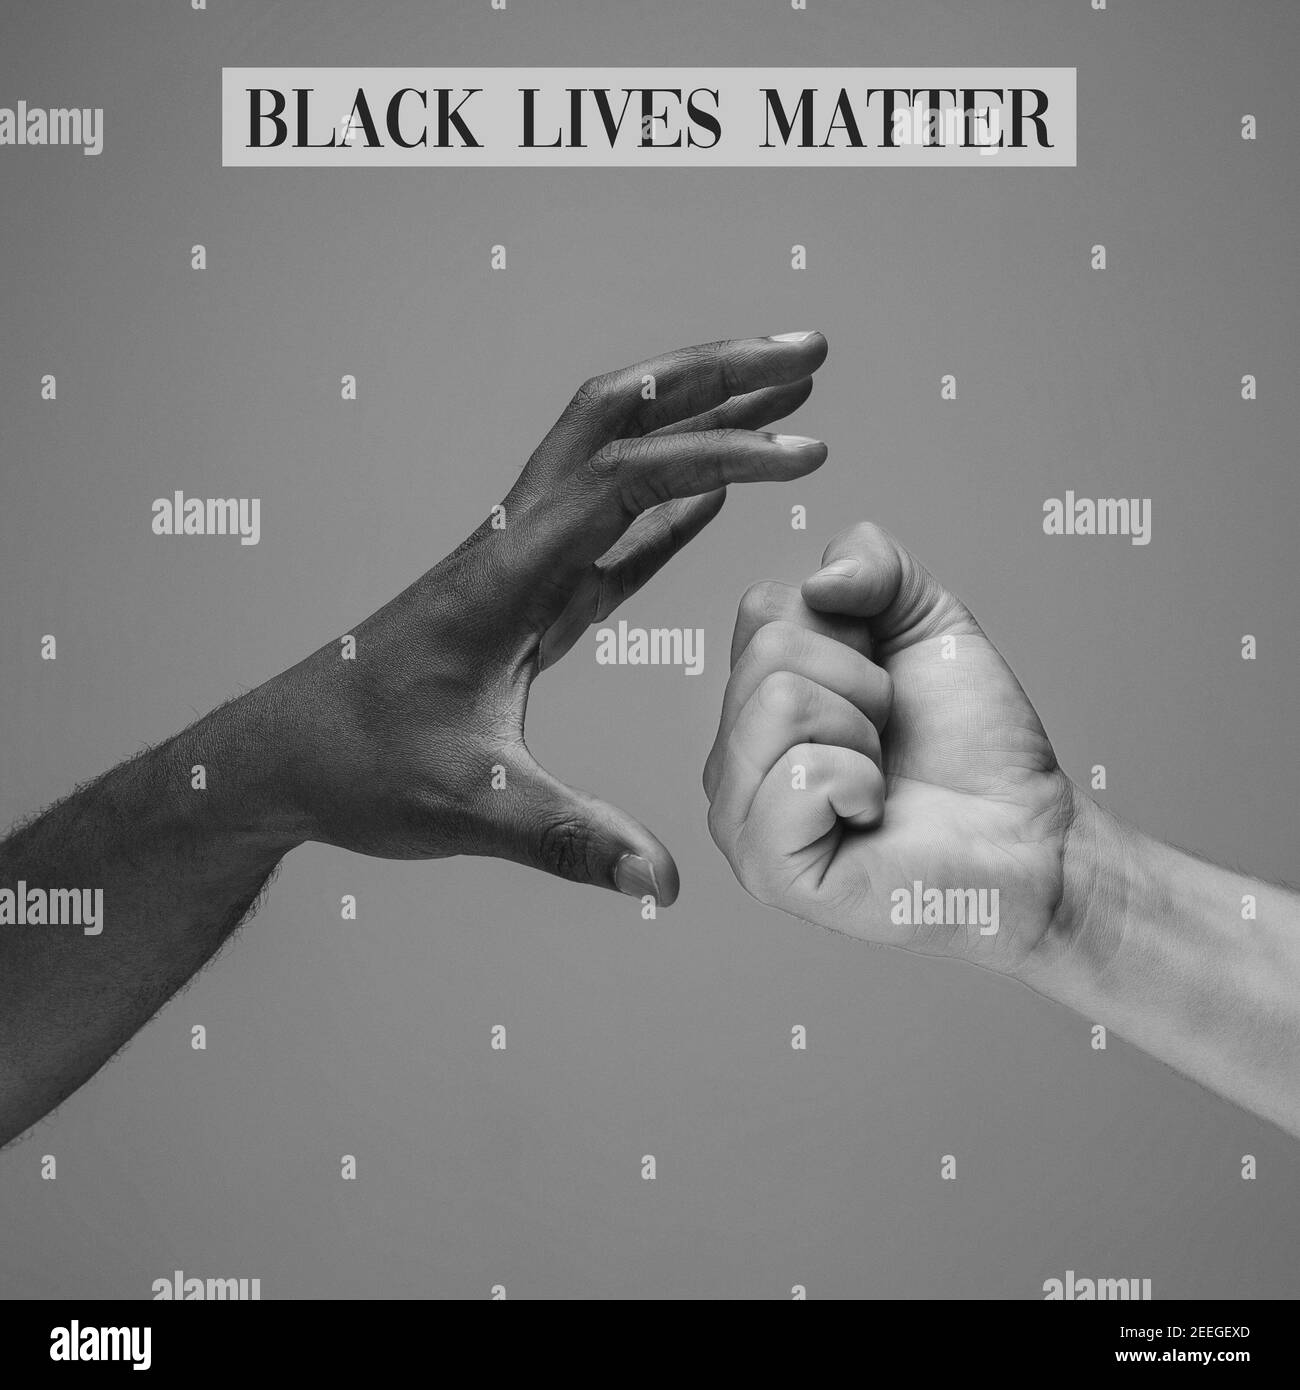 Schwarze Leben sind wichtig. Afrikanische und kaukasische Hände gestikulieren auf grauem Studiohintergrund. Toleranz und Gleichheit, Einheit, Unterstützung, freundlicherweise Koexistenz zusammen Konzept. Weltweite multirassische Gemeinschaft. Stockfoto